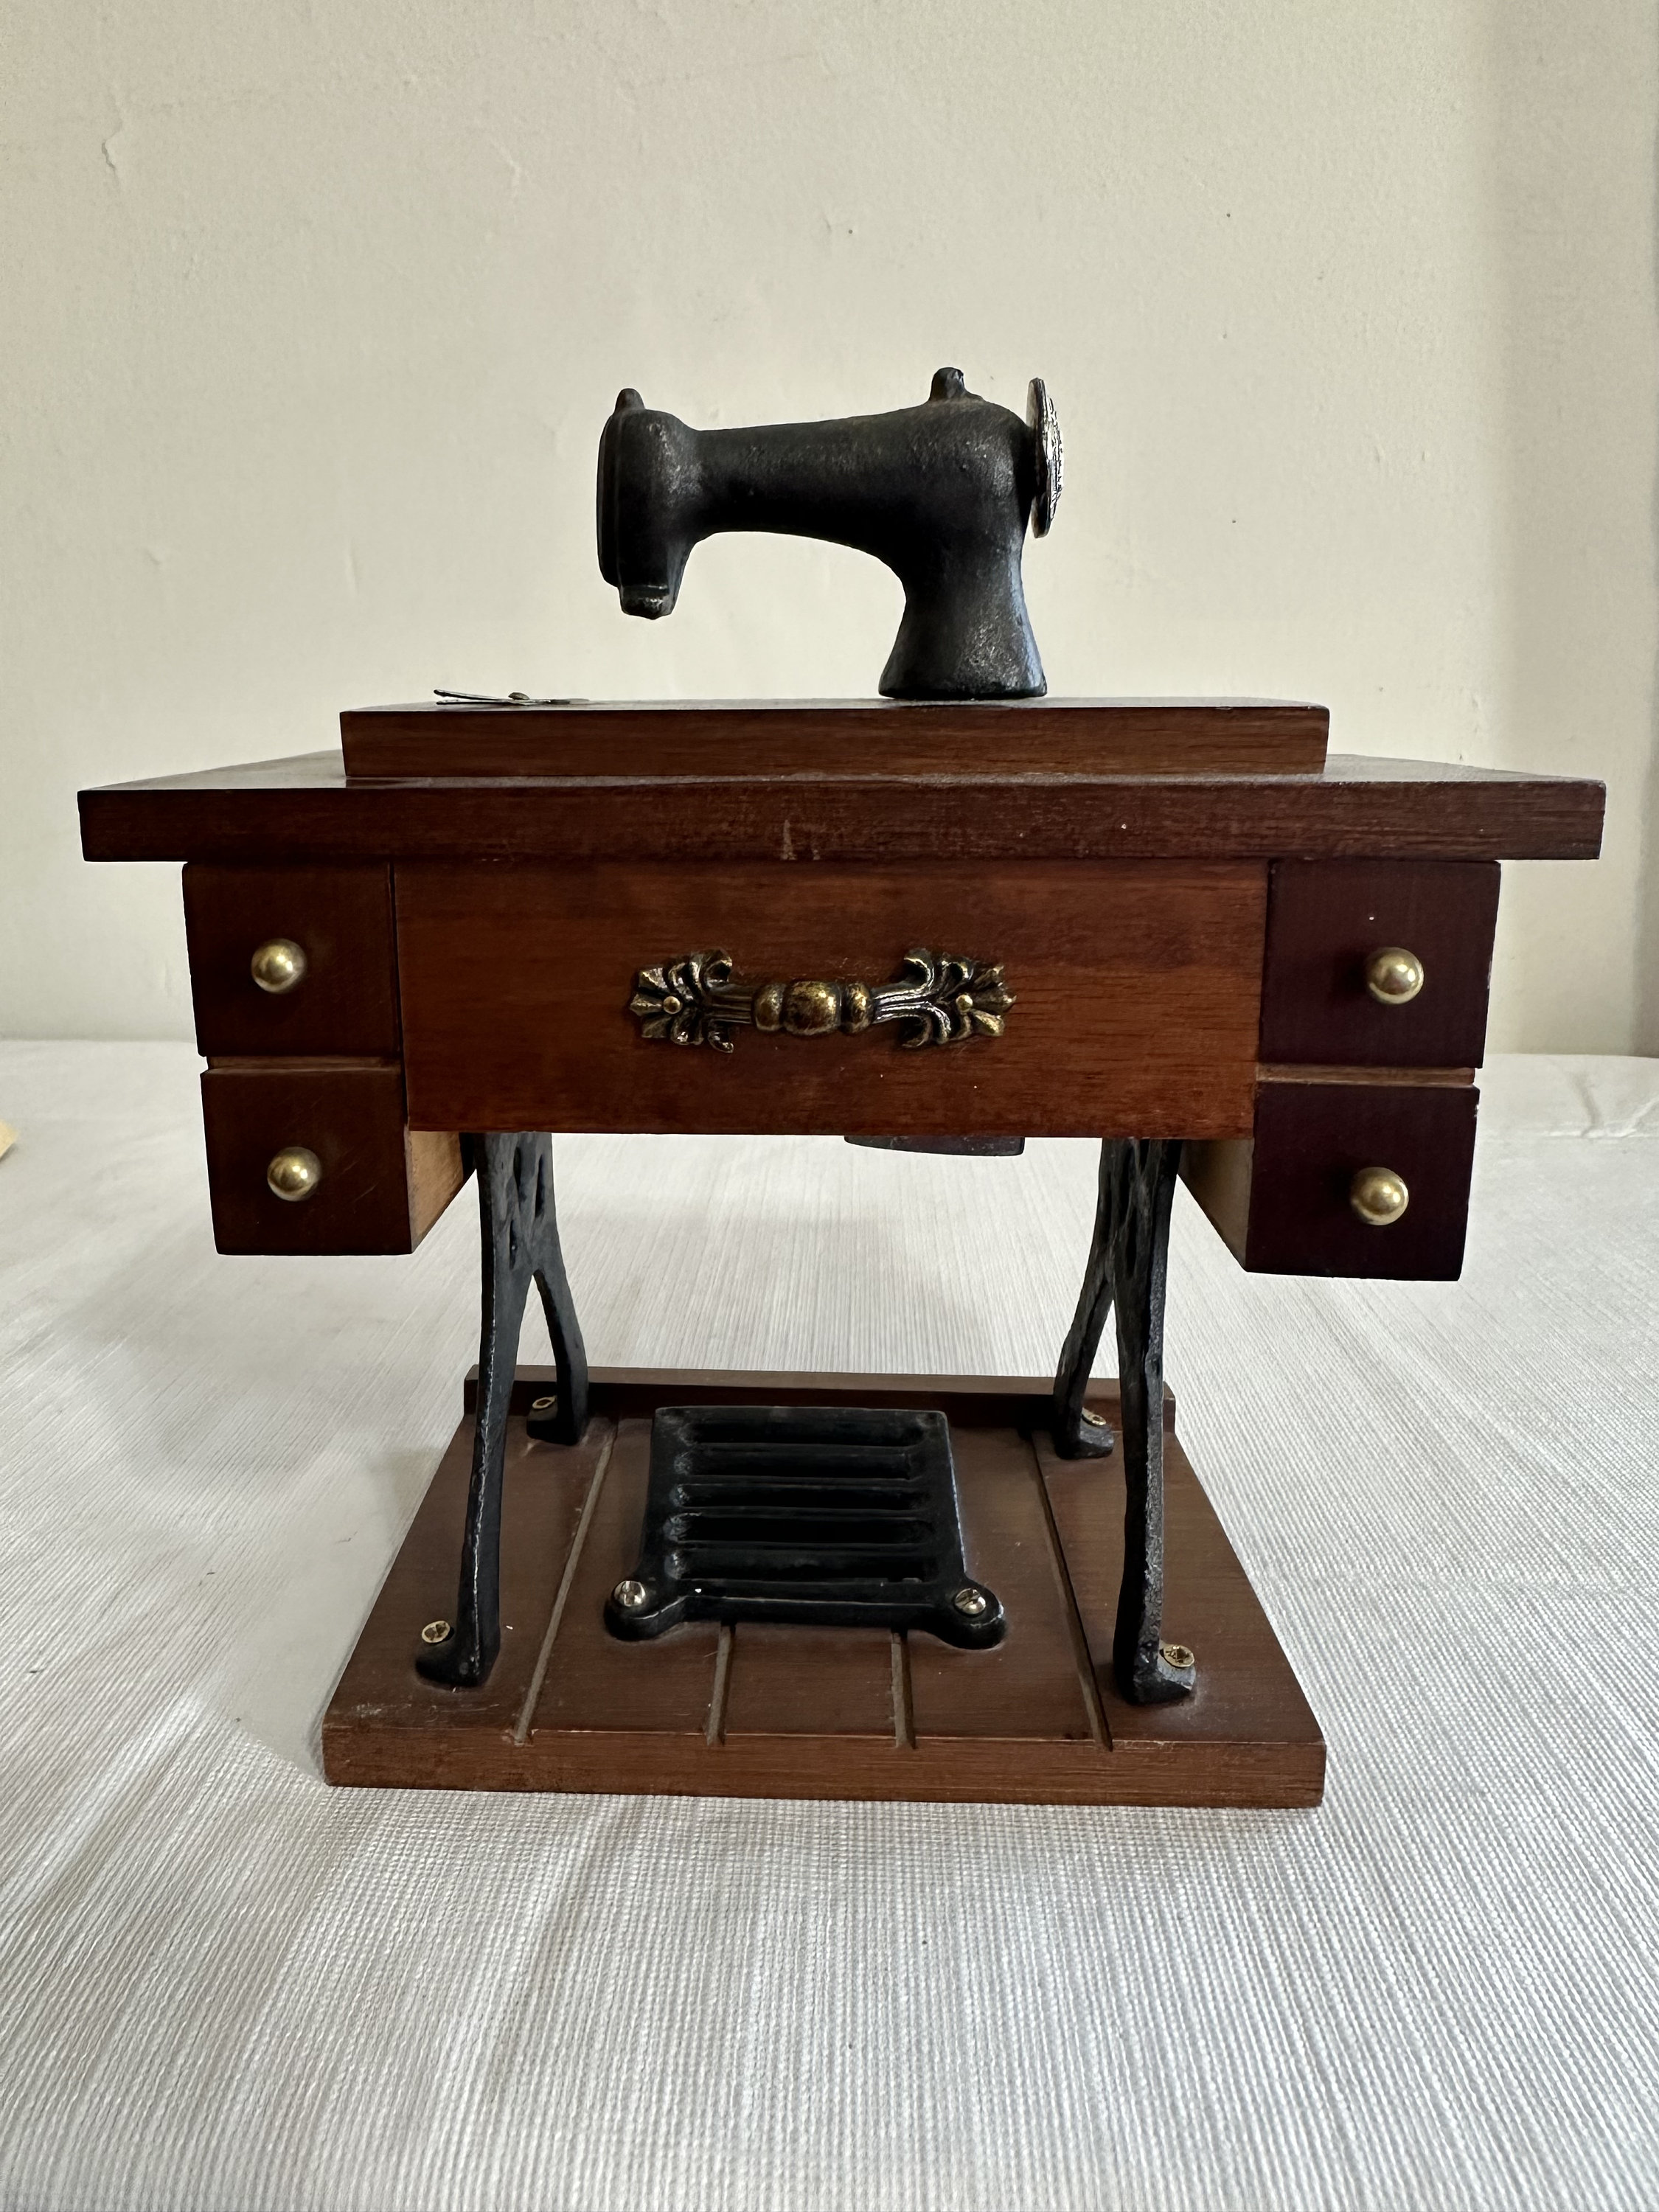 Homezo™ Sewing Machine Music Box